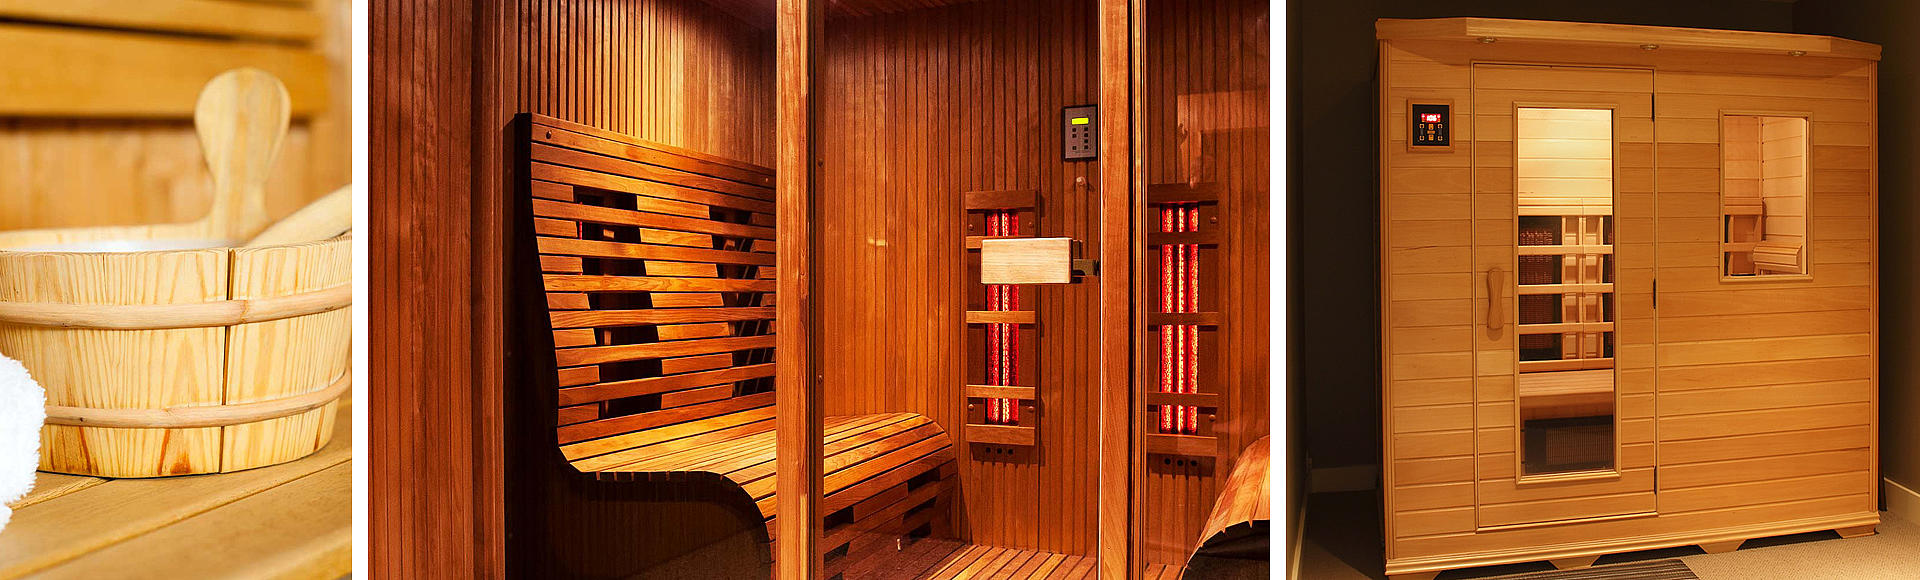 Sauna - Wellness für die Region Odenwald